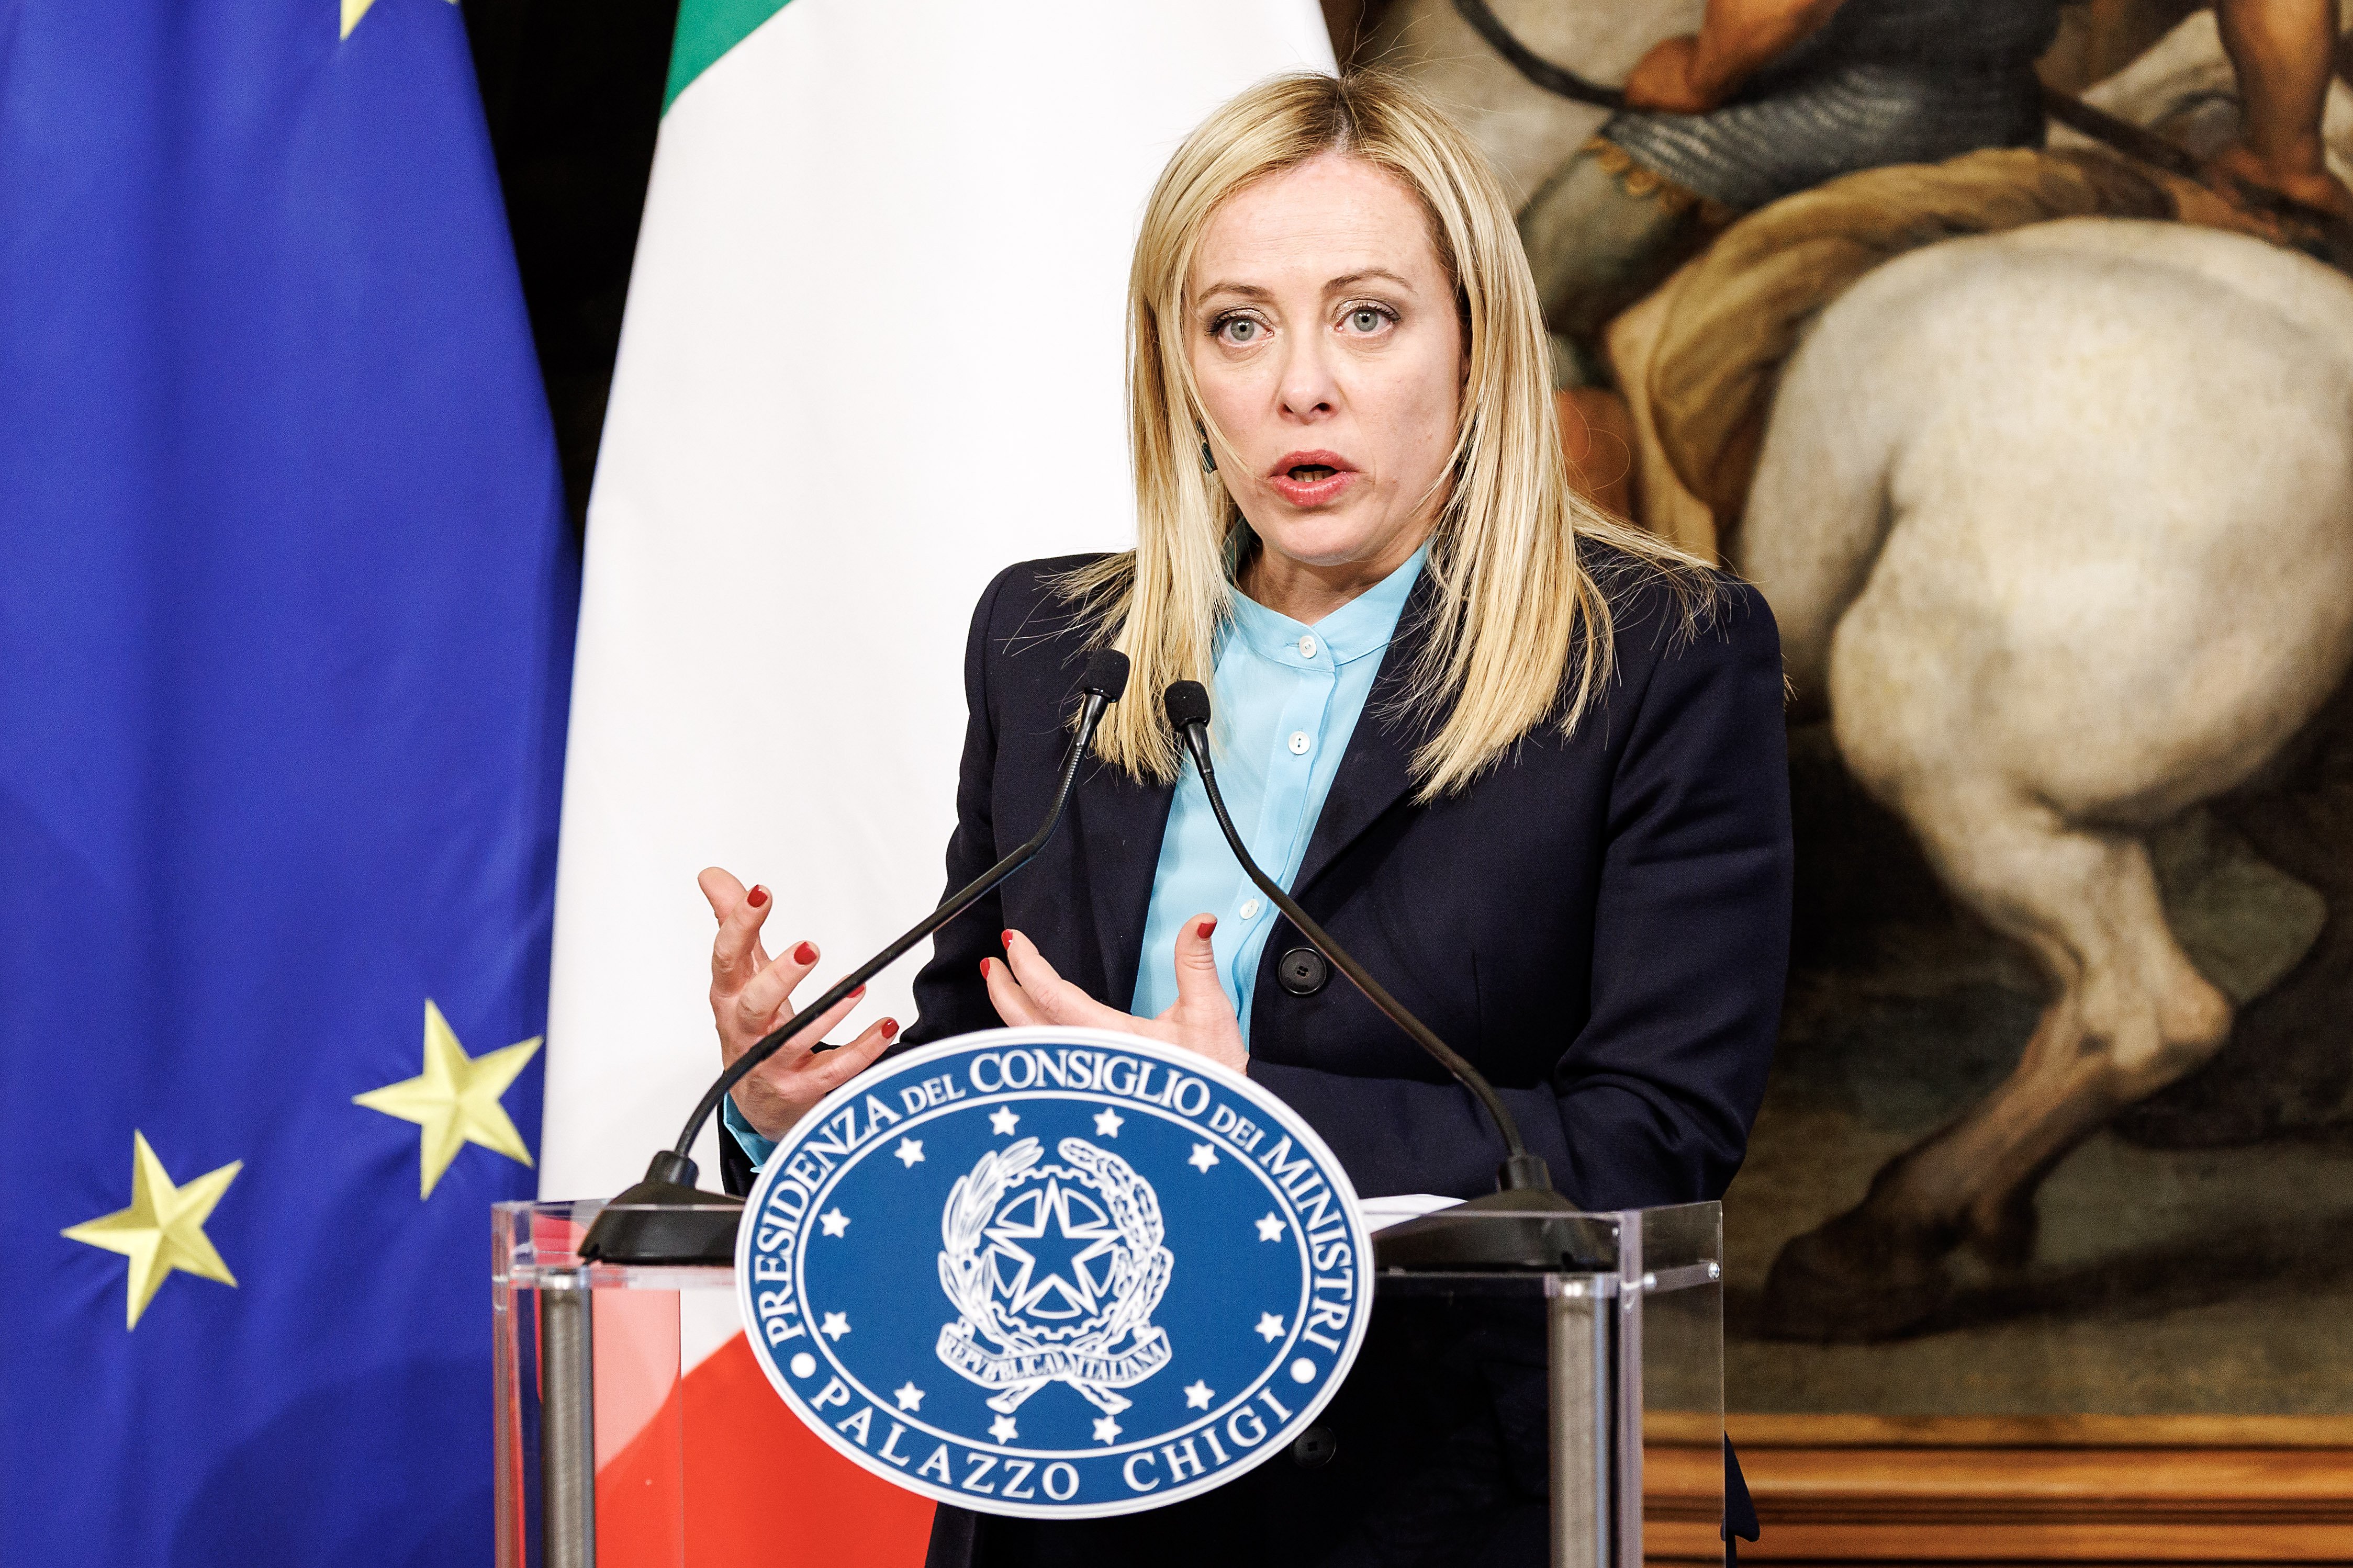 Giorgia Meloni anuncia que defenderá el Mediterráneo "desde Baleares hasta los estrechos turcos"